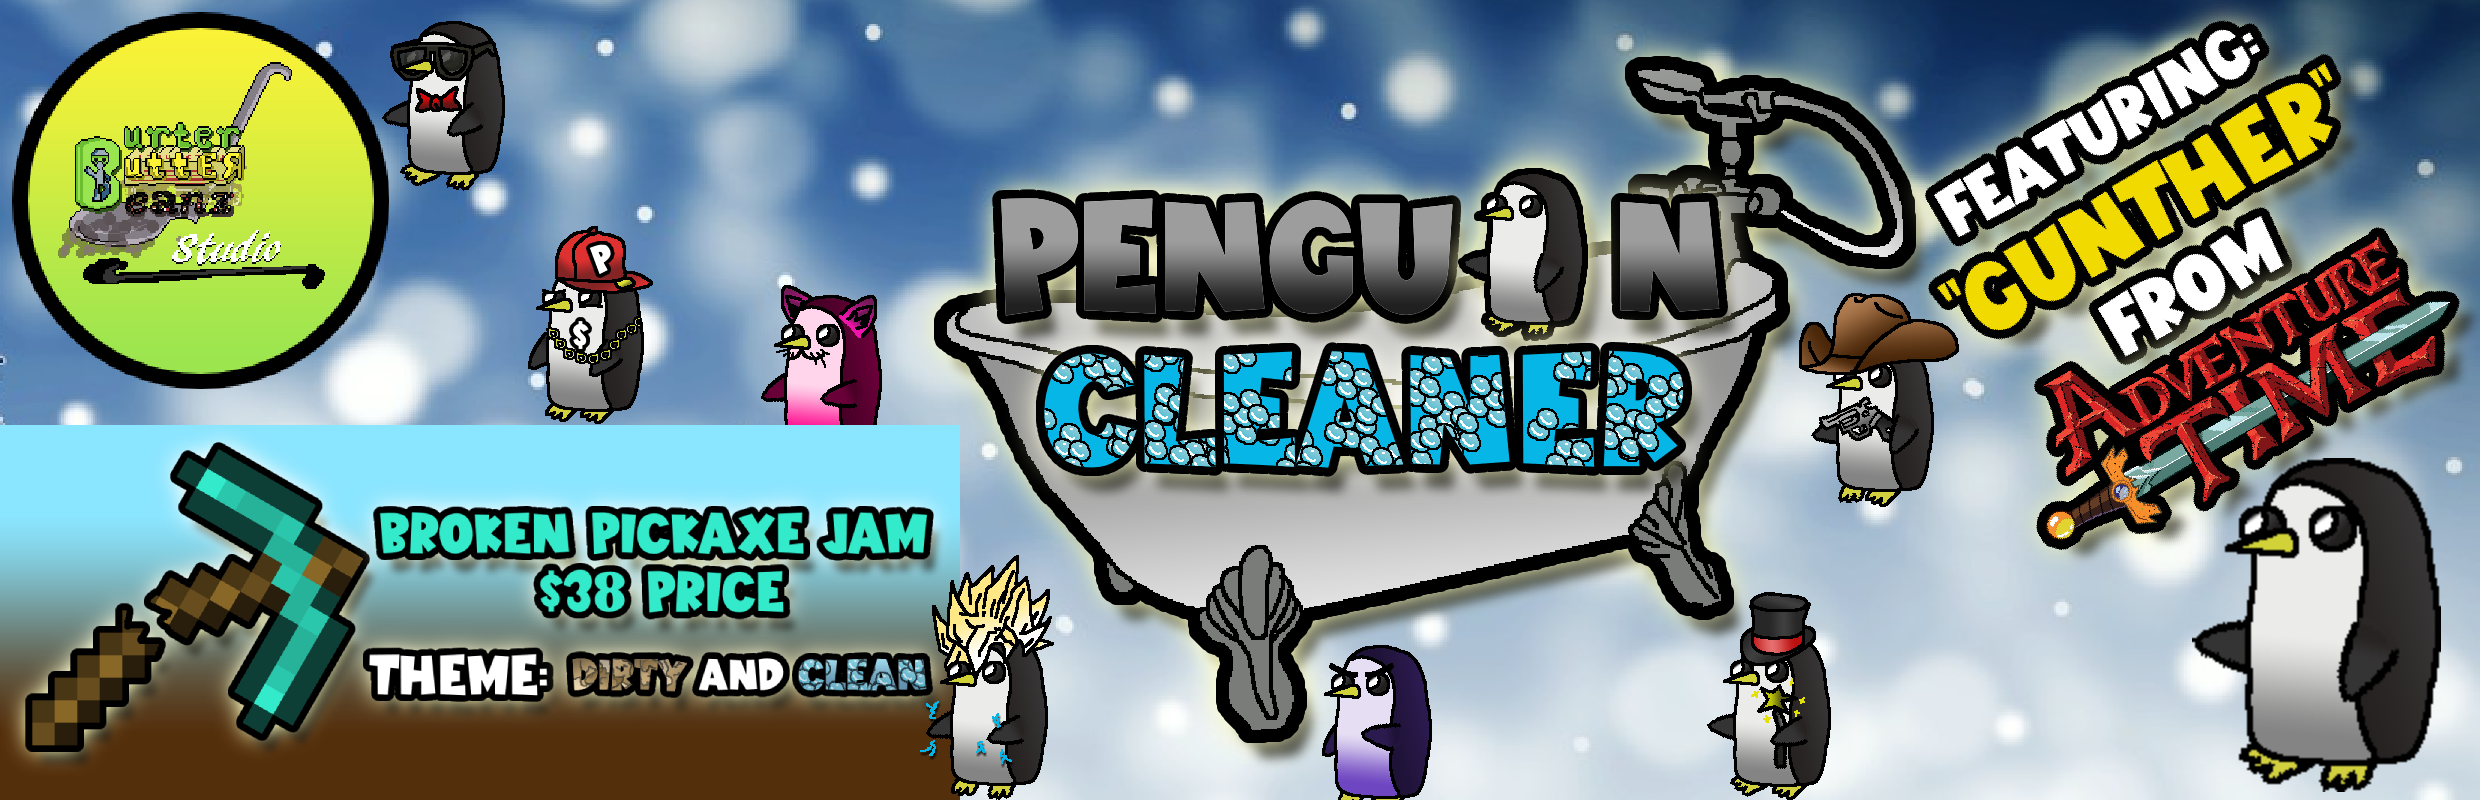 Penguin Cleaner